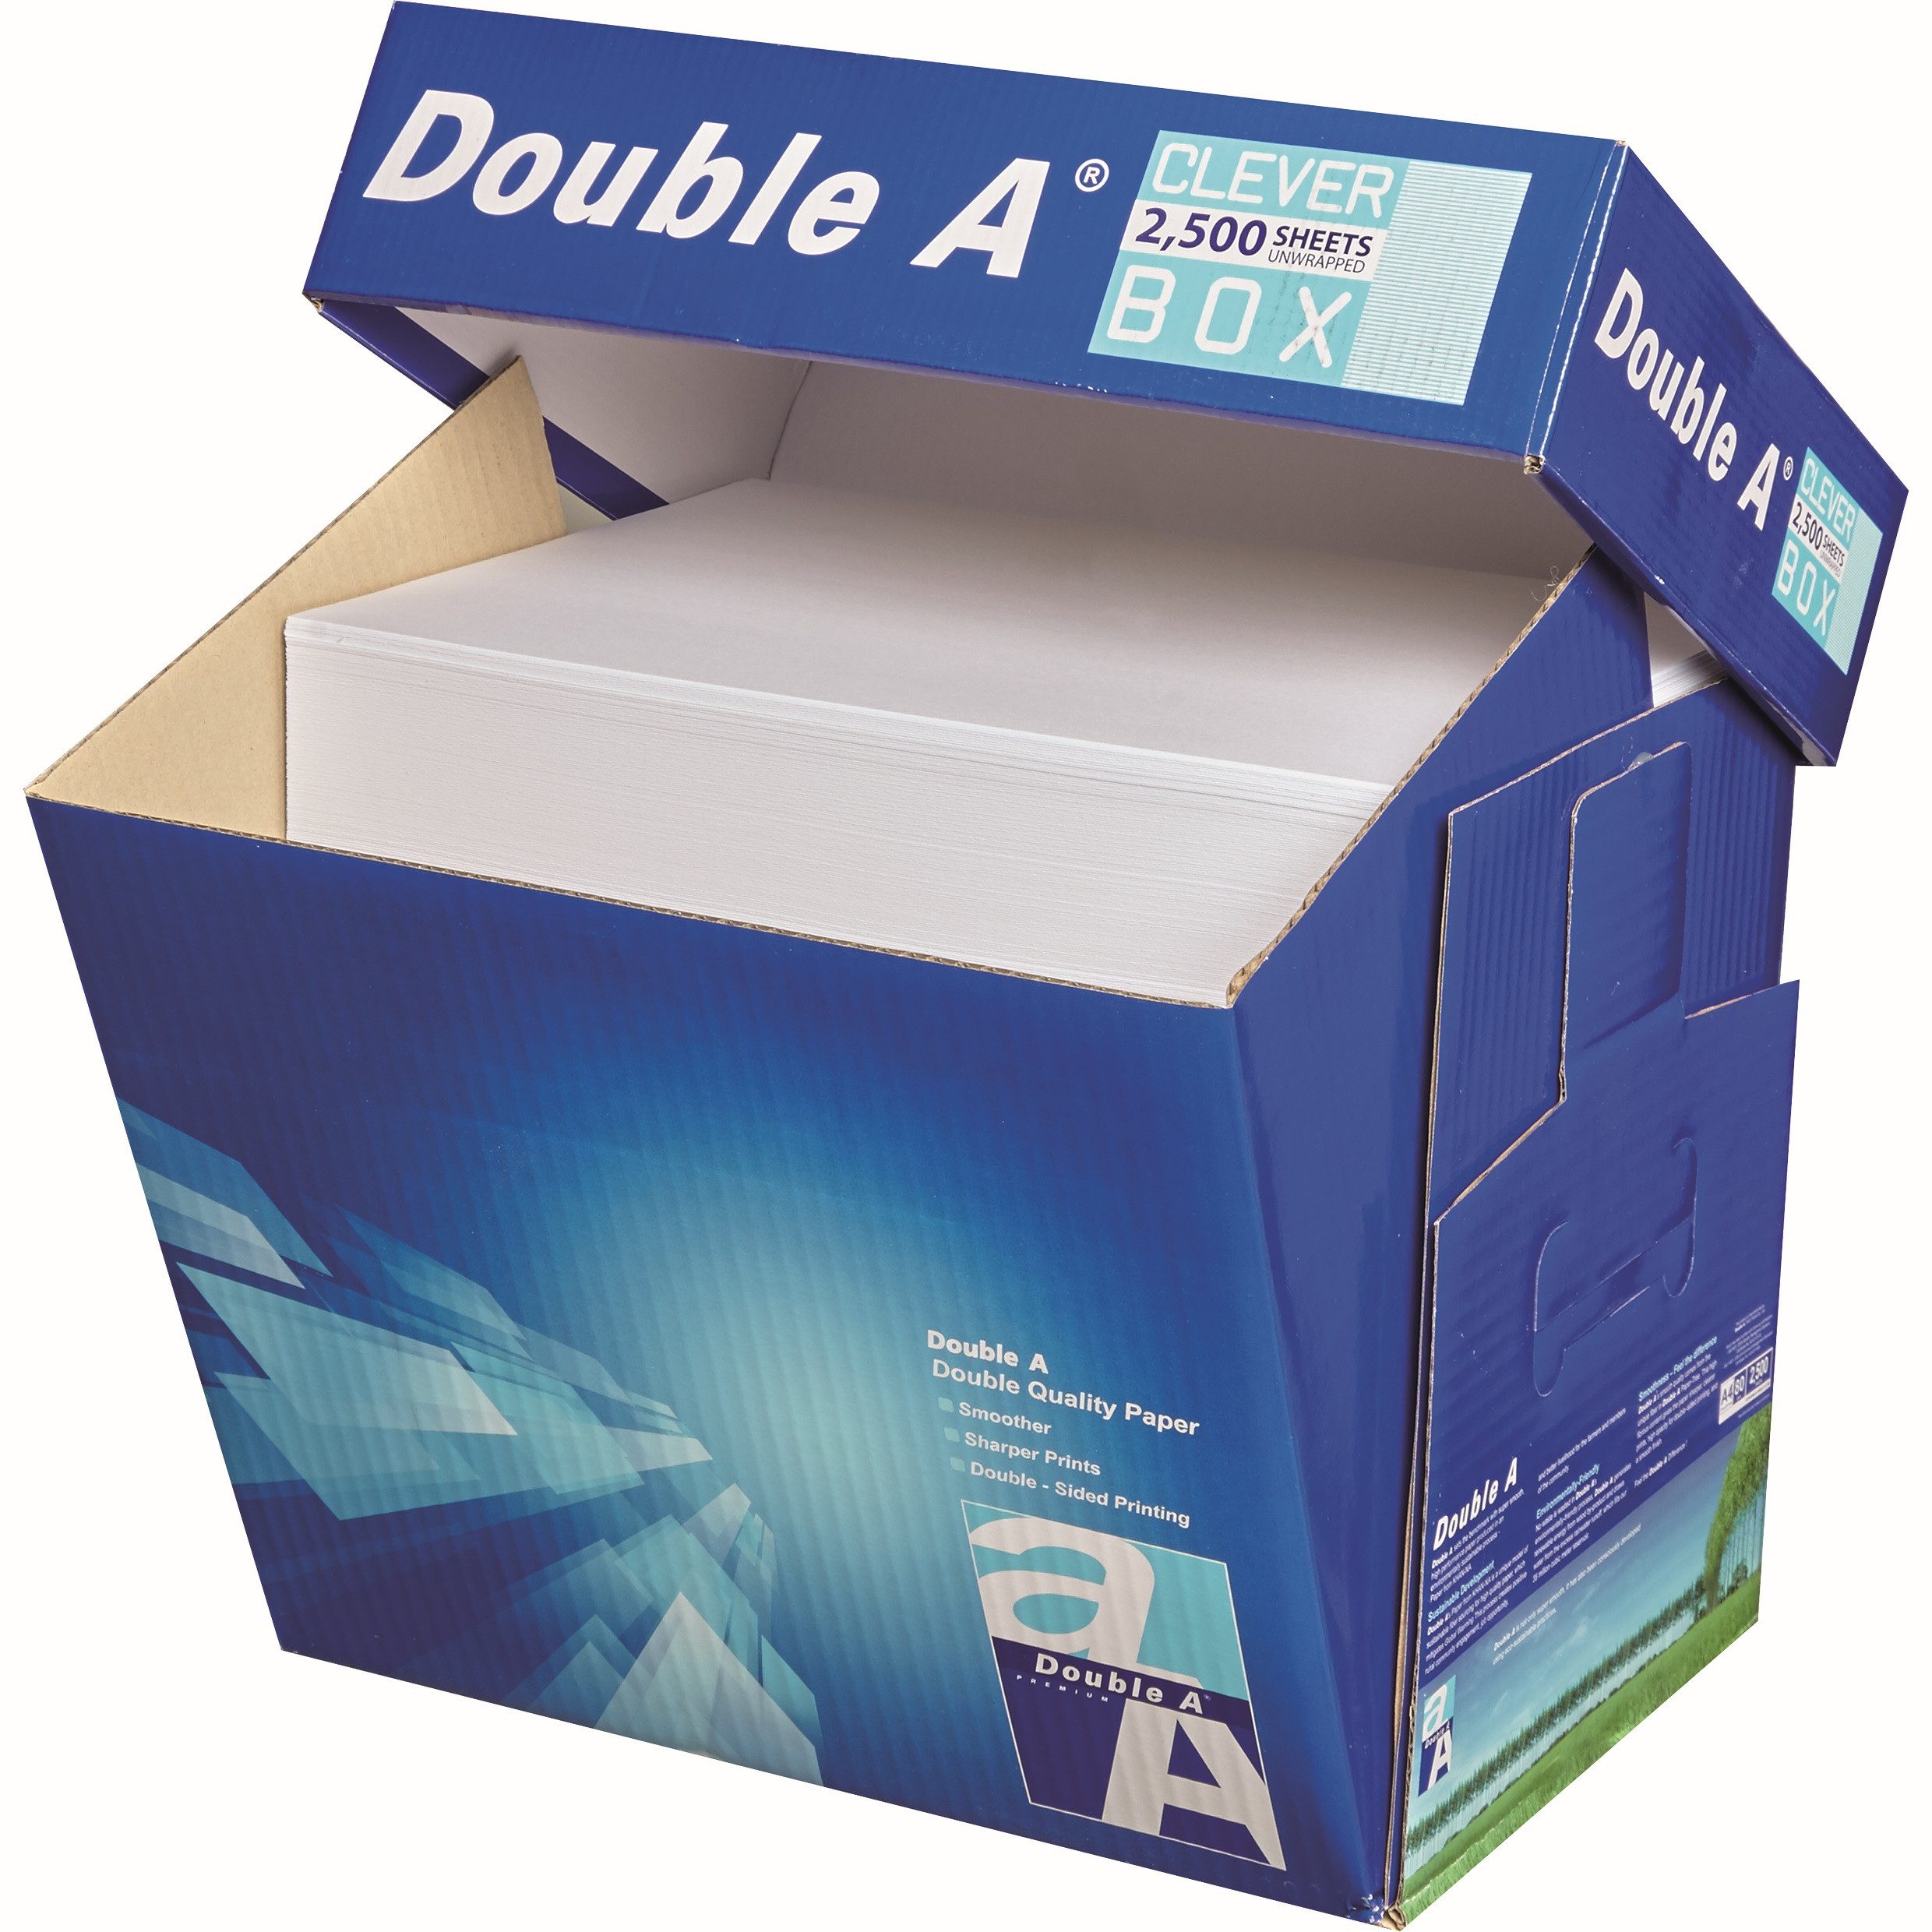 DOUBLE A Kopierpapier Öko-Box, DIN A4, 80 g/m², Öko-Box: 2.500 Blatt